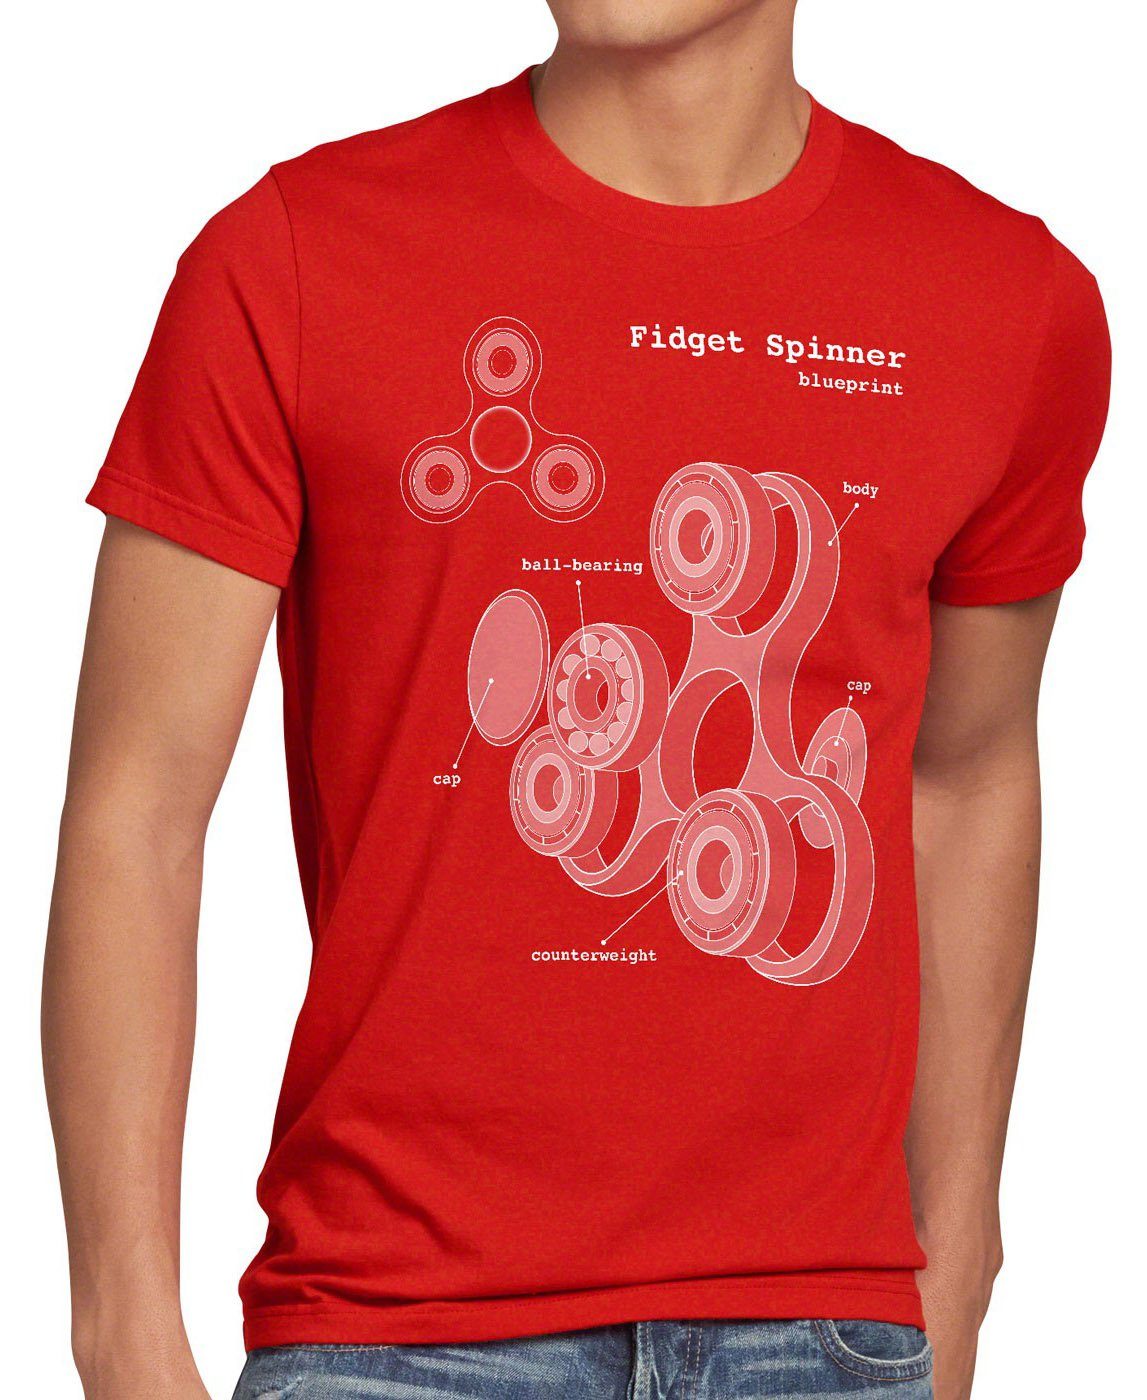 Print-Shirt Spinner Blaupause Hand T-Shirt Spielzeug Handspinner Toy Fidget Herren rot style3 Finger